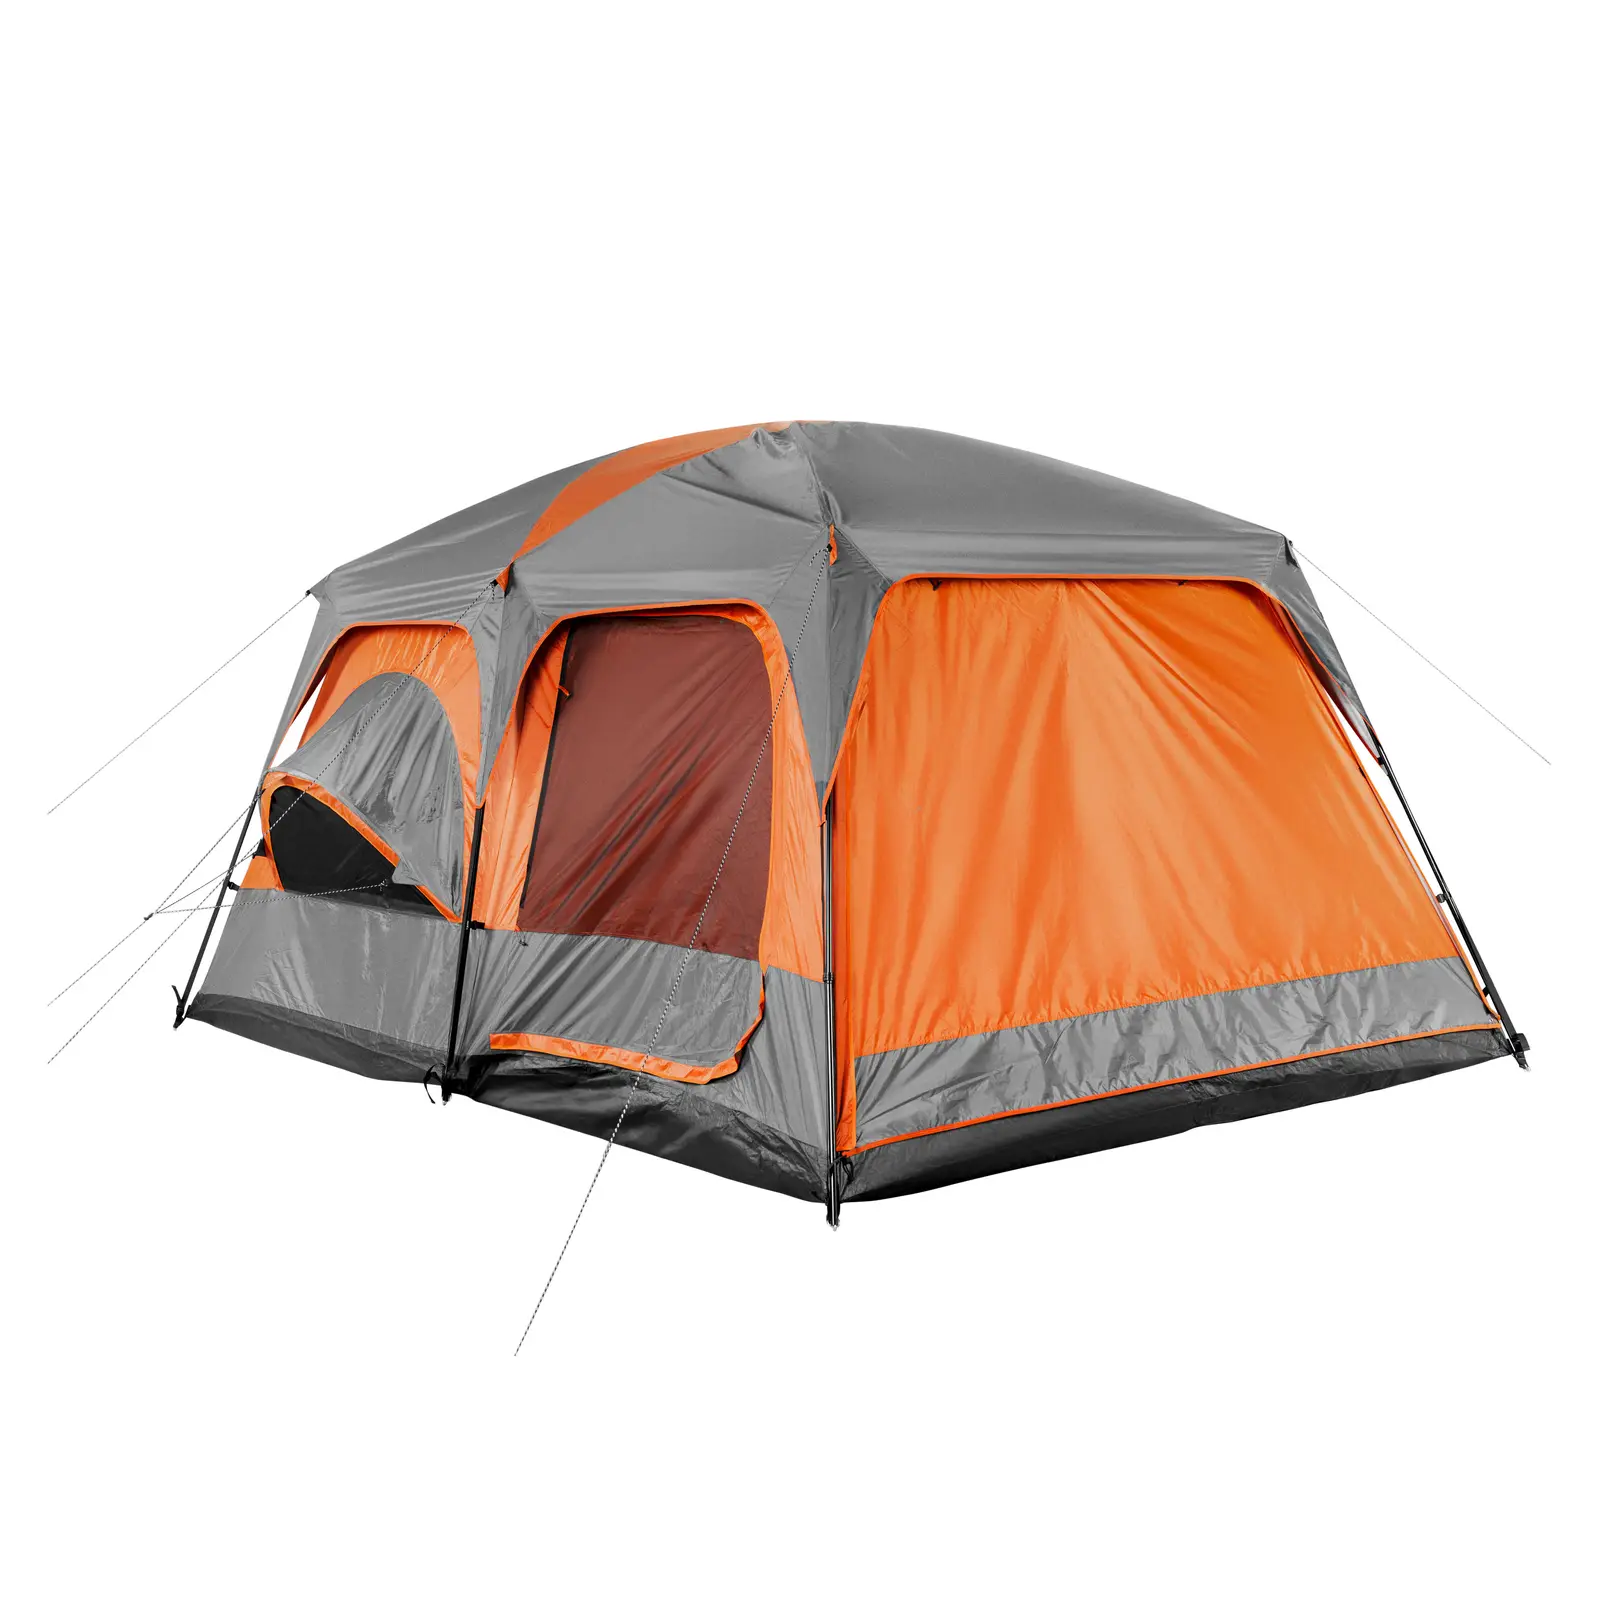 Tenda da campeggio - 3 camere - Tessuto Oxford, fibra di vetro